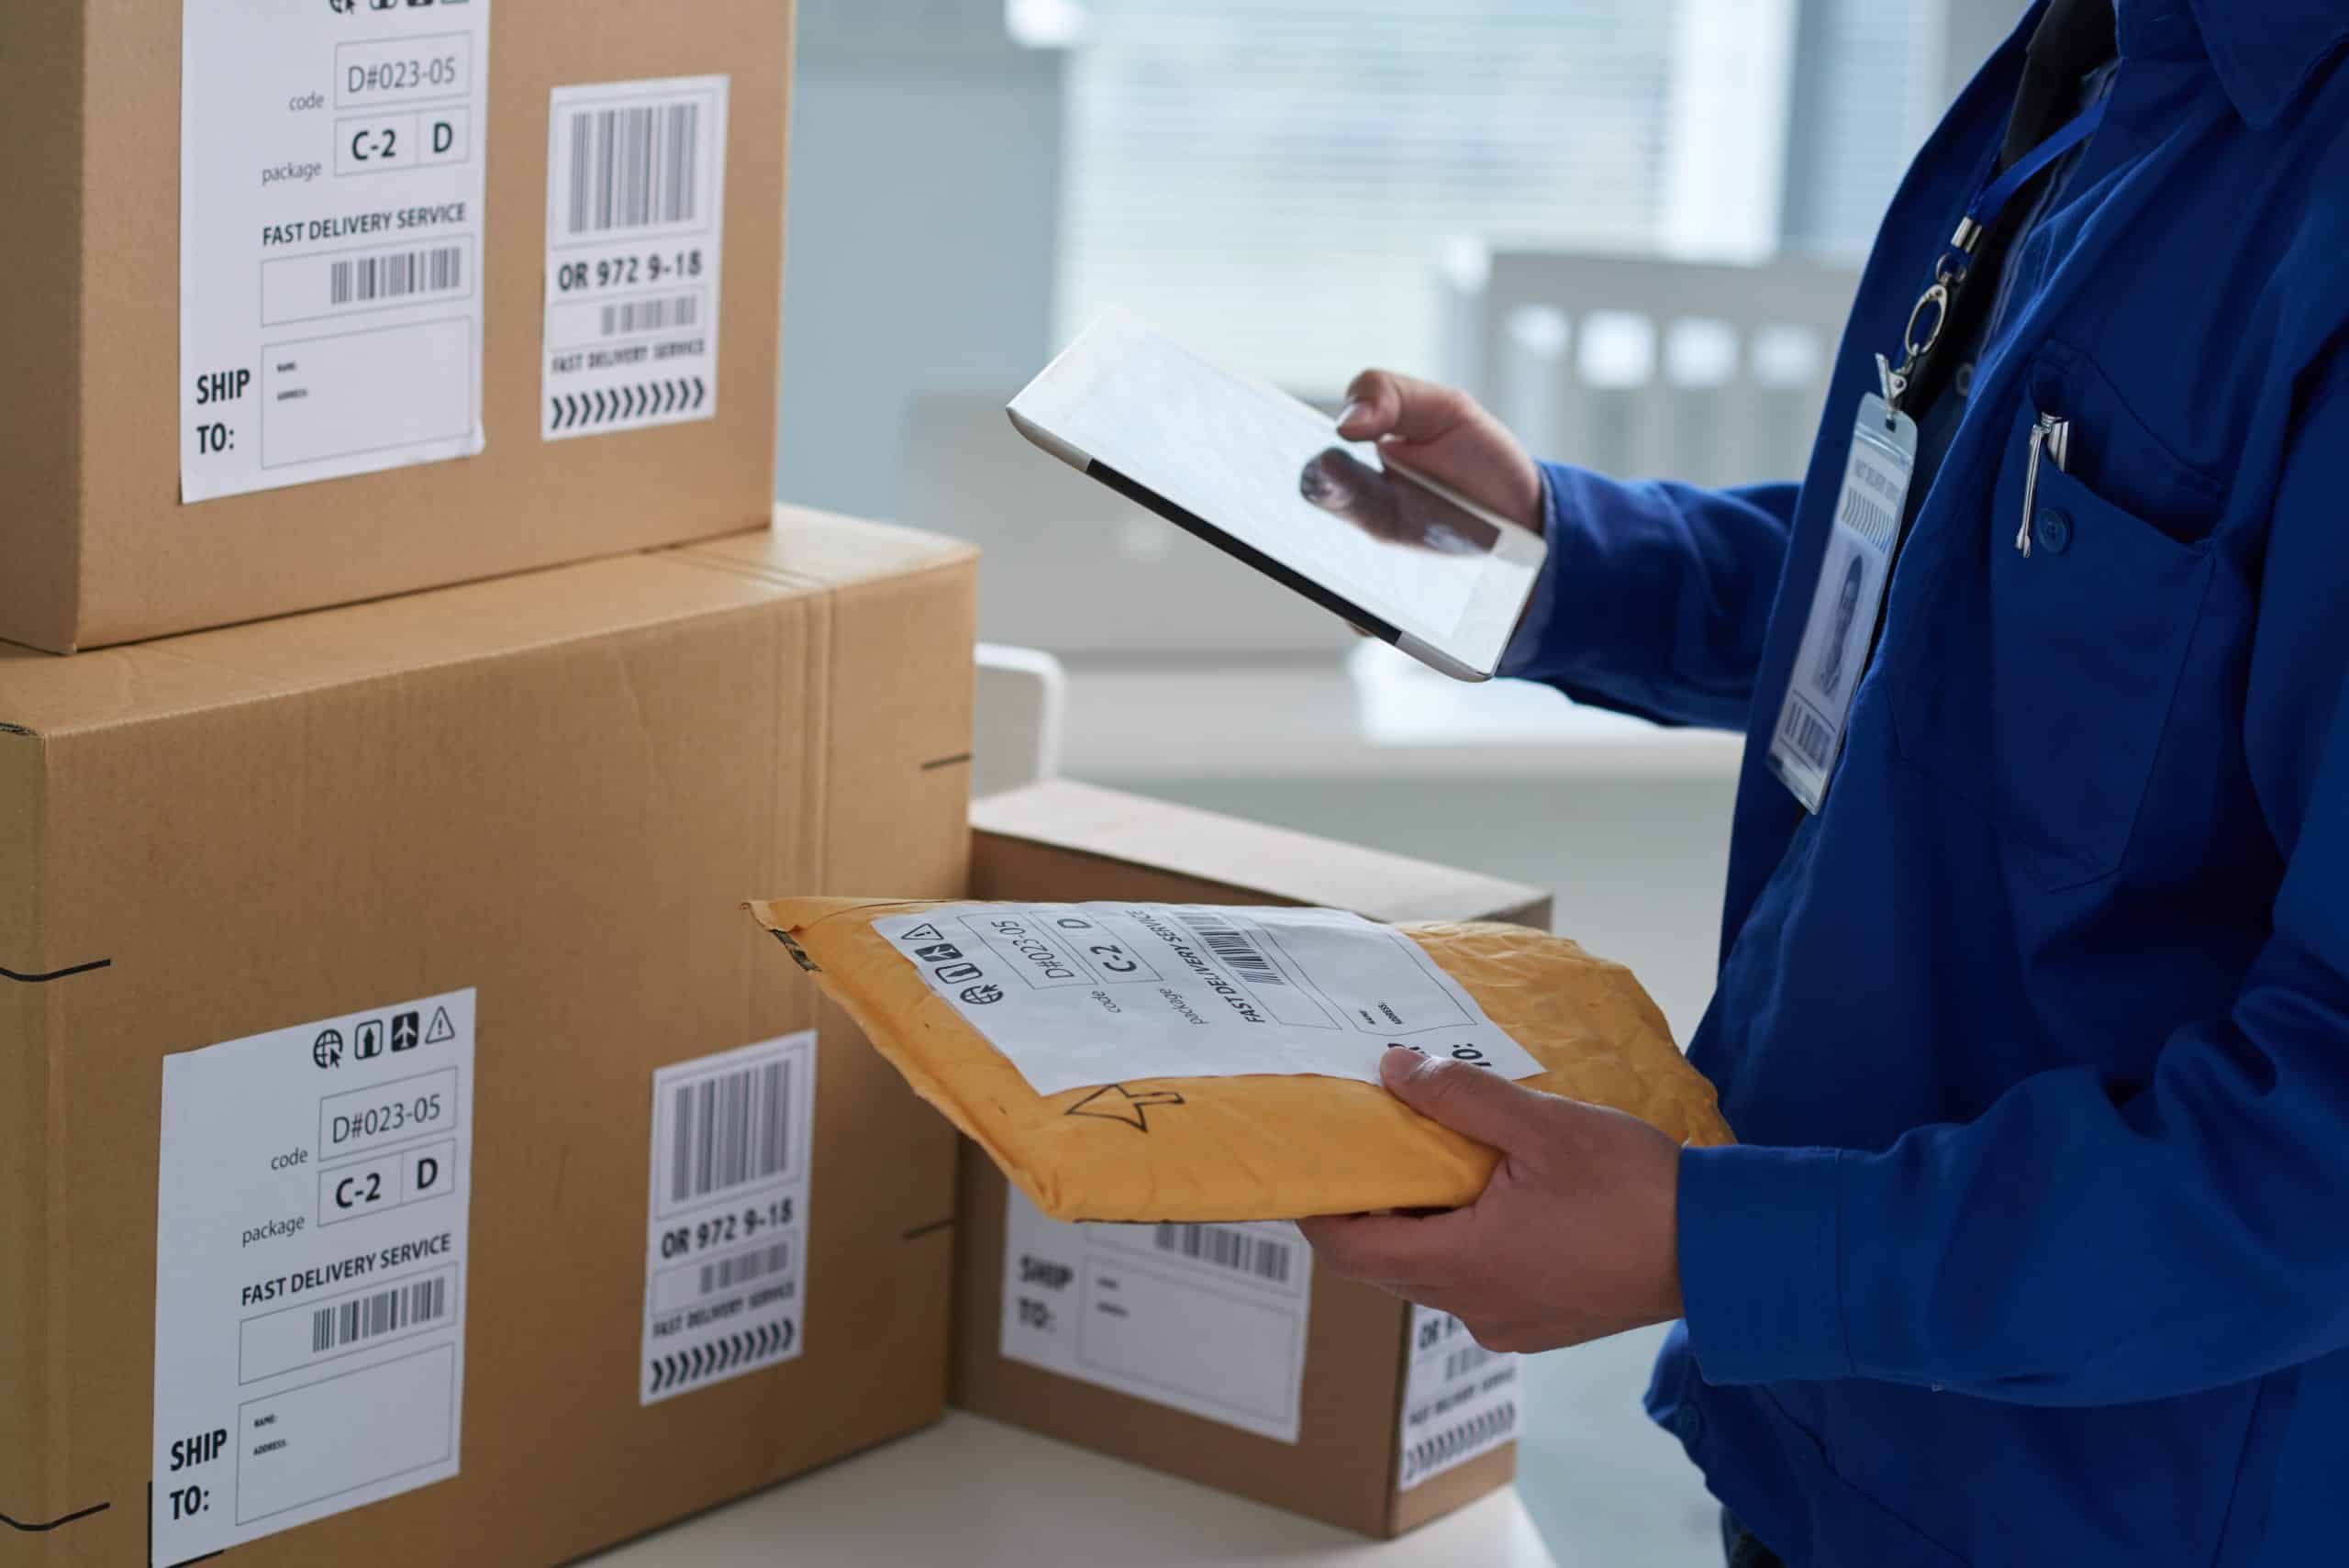 Des échantillons de produits peuvent être importés par des services de transporteurs, ou ils peuvent être envoyés dans un conteneur avec d'autres marchandises, après avoir correctement enregistré cette partie de la cargaison dans les documents de transport en les stipulant comme les échantillons pour la certification.